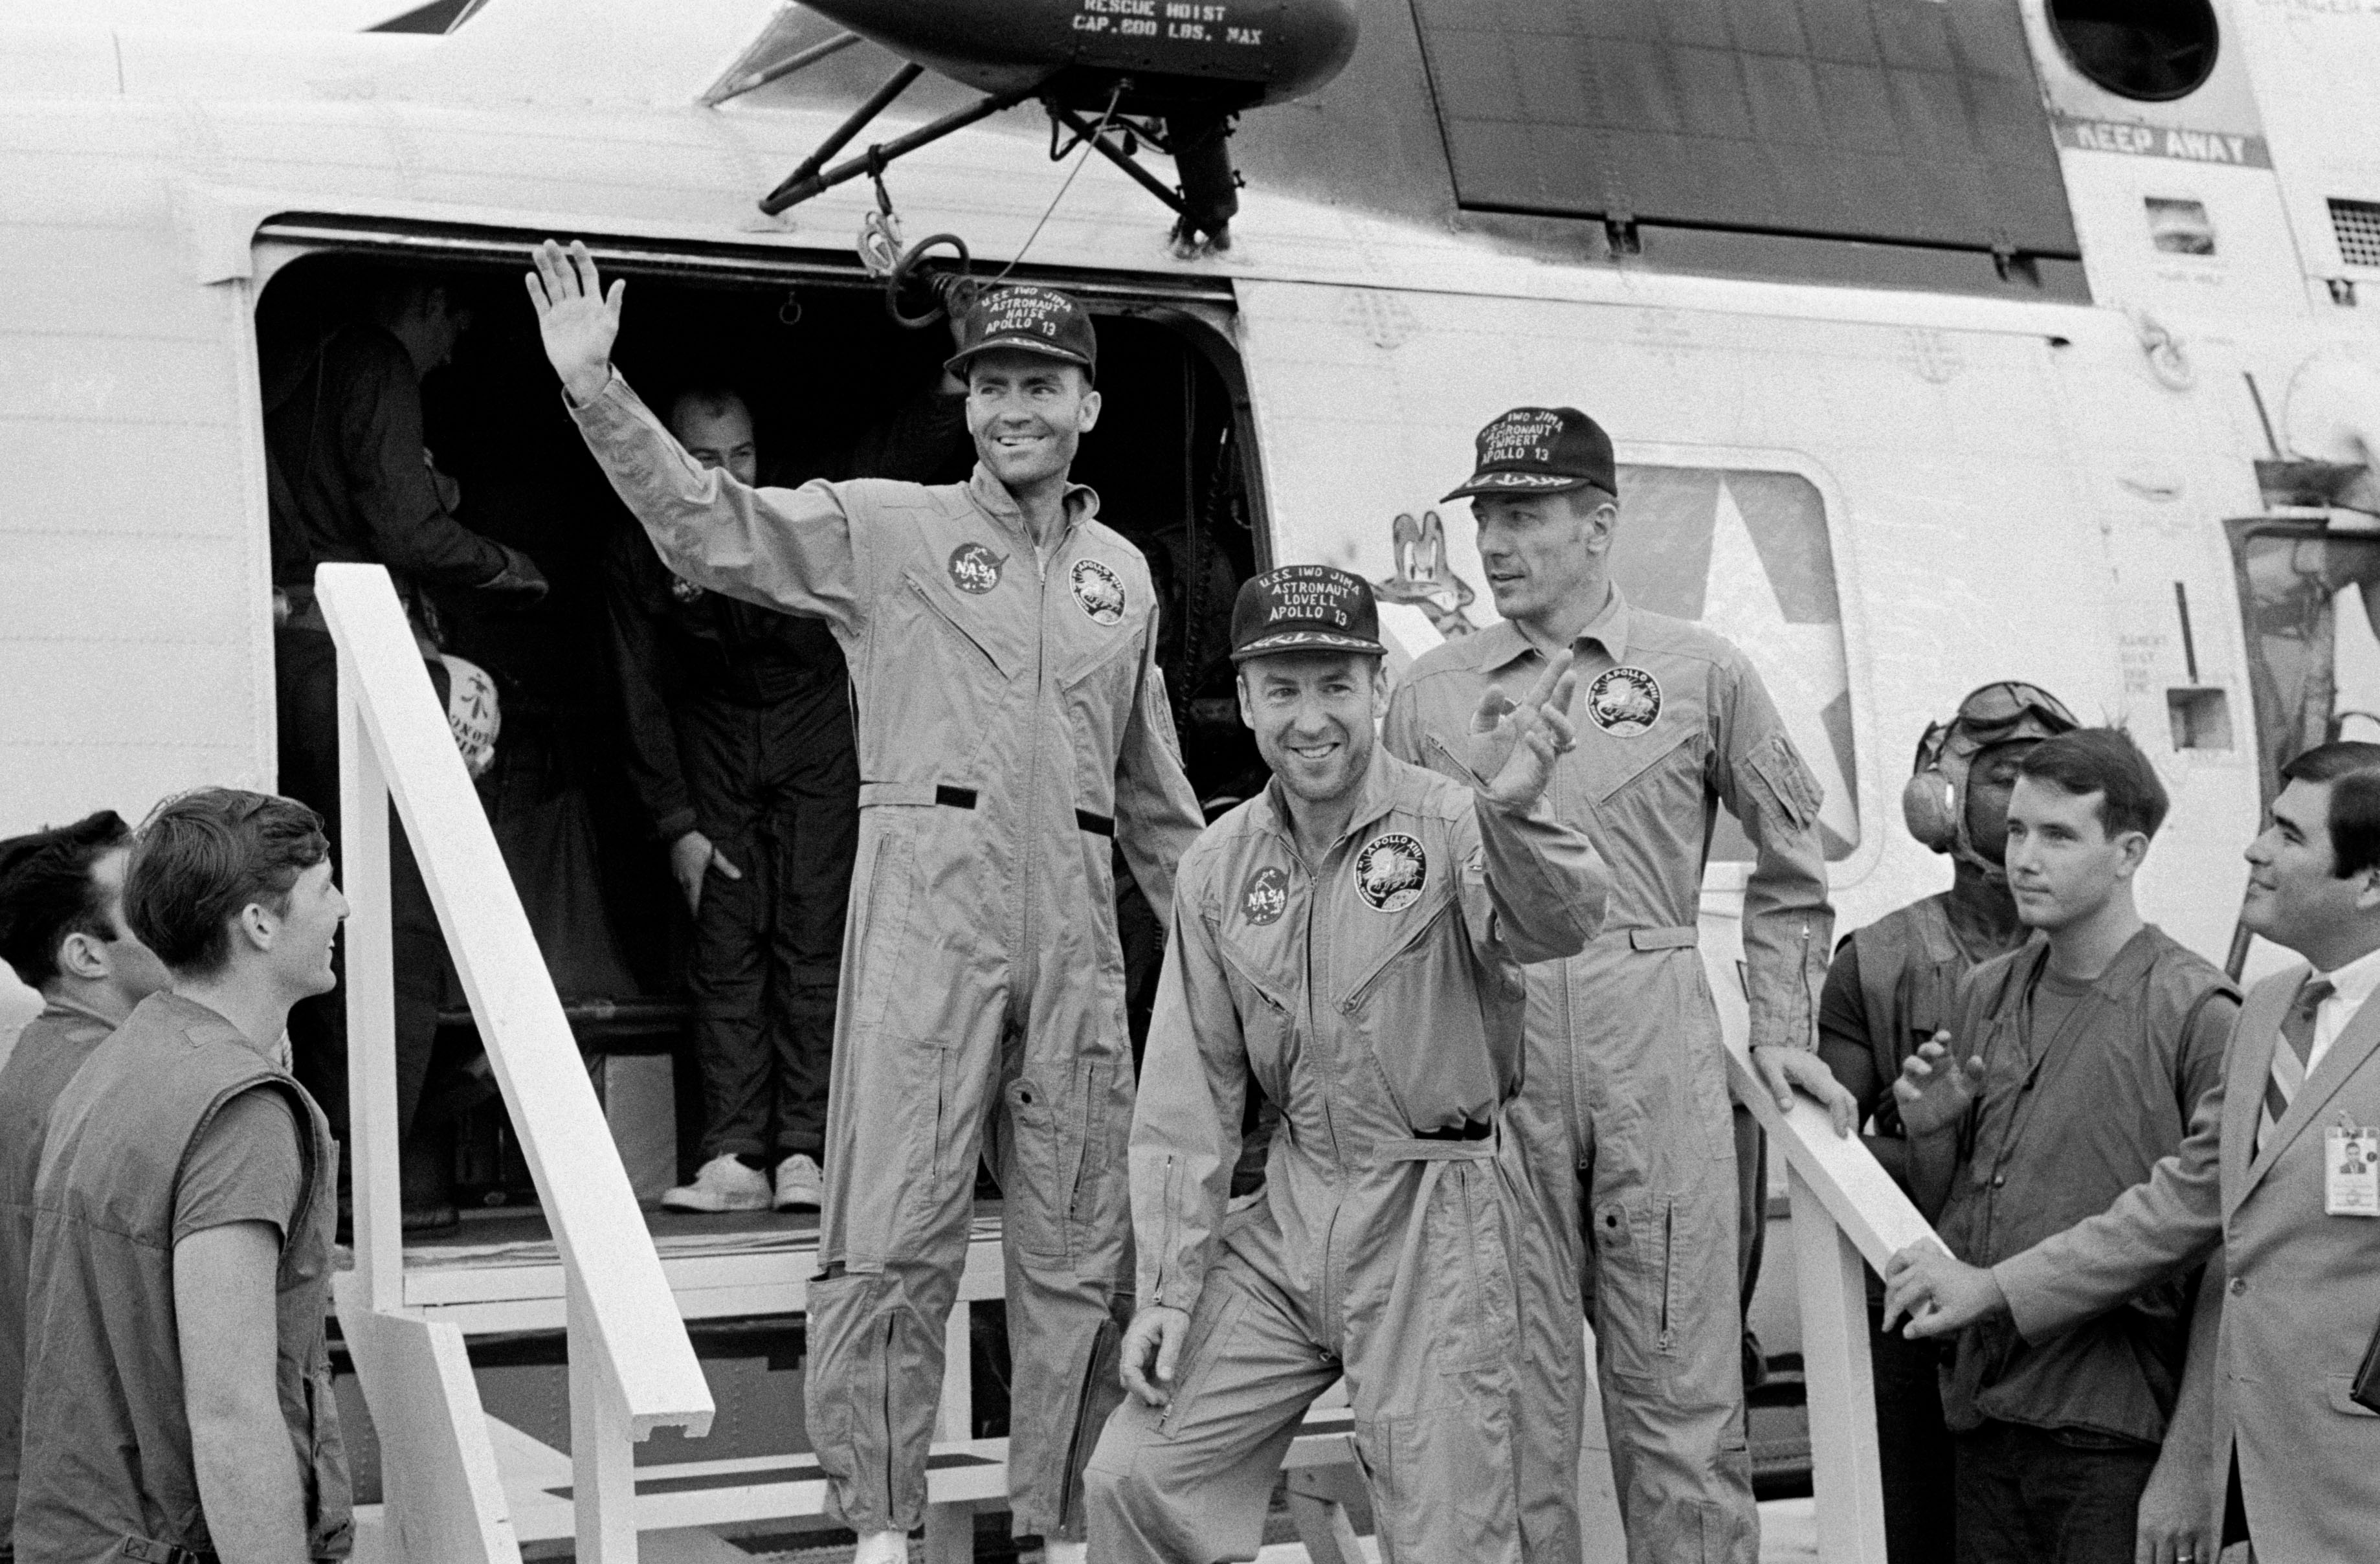 Gyötrötten, fáradtan, de boldogan: érkezés az Iwo Jima fedélzetére